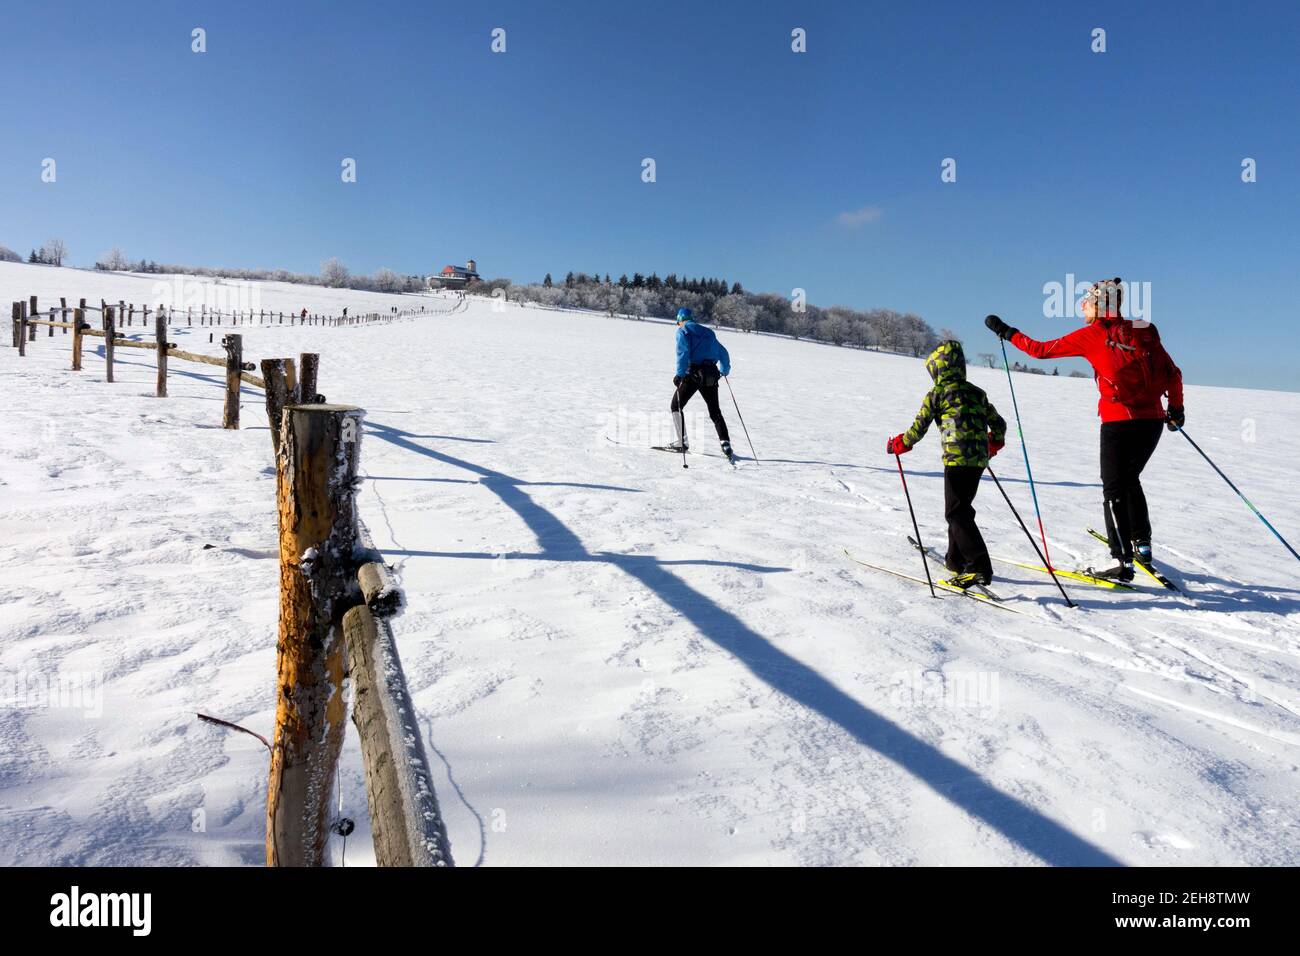 Style de vie familial moderne en vacances d'hiver, ski de fond style de vie actif en dehors de la famille Banque D'Images